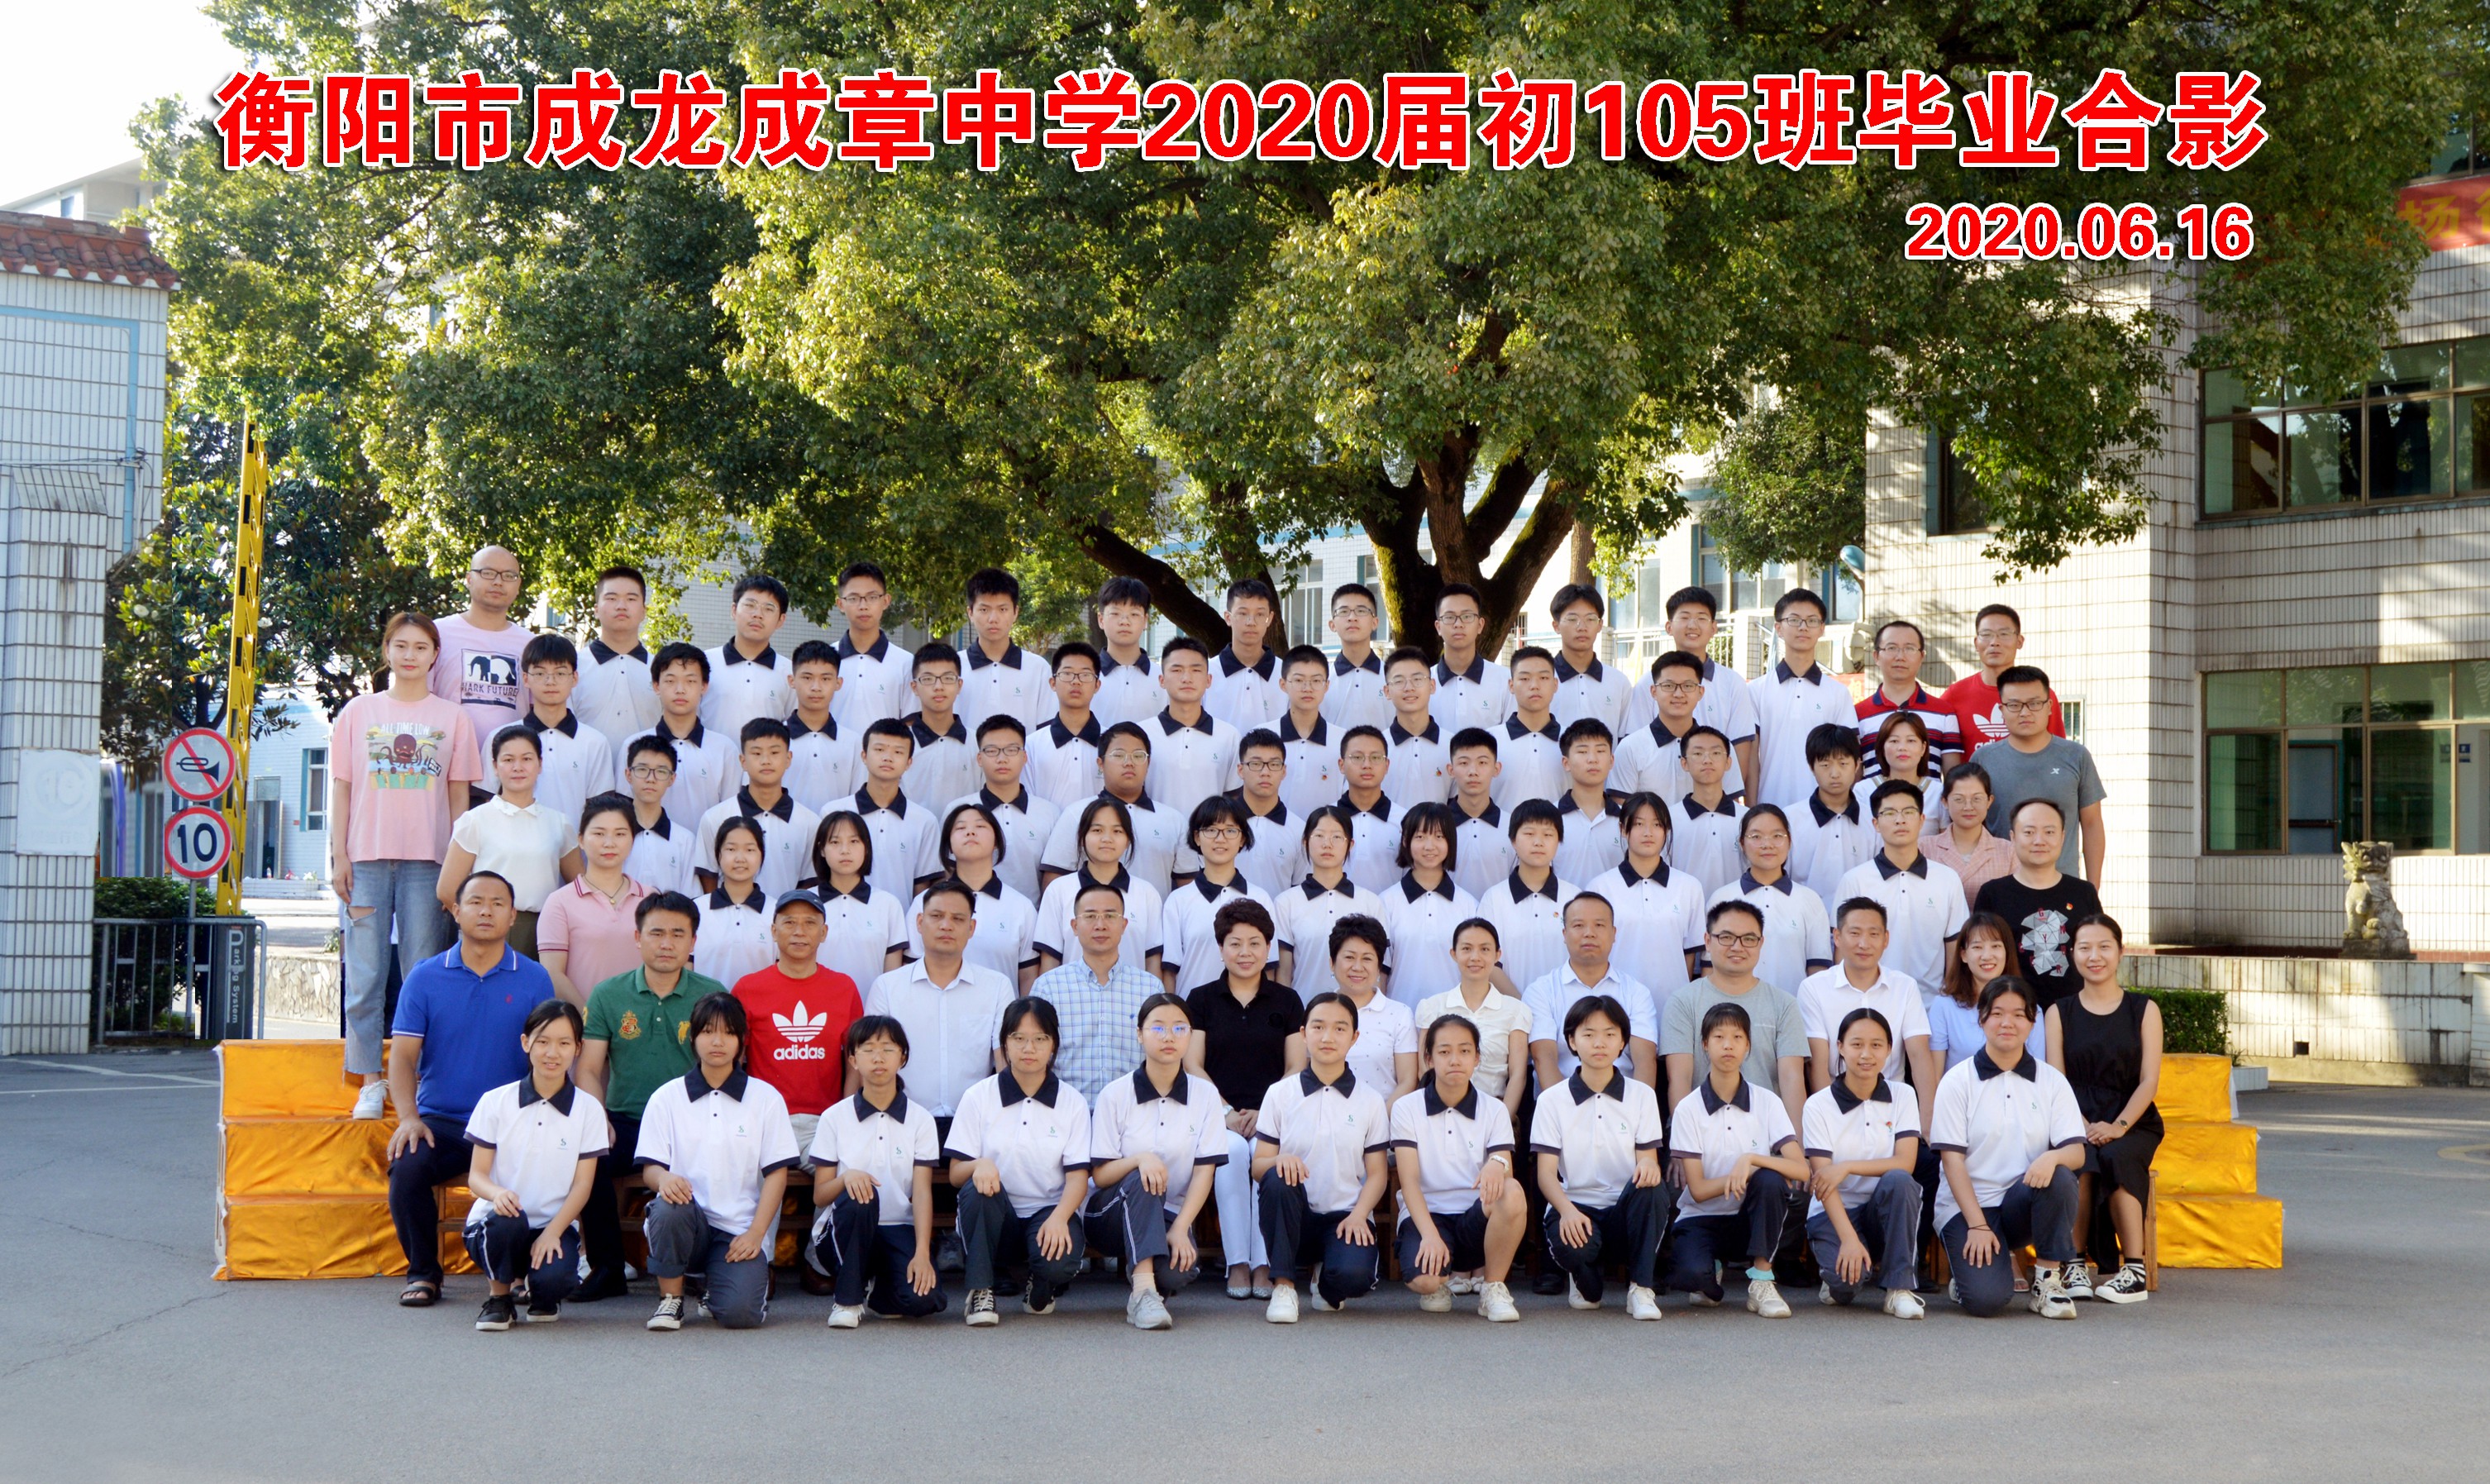 衡阳县五中师生开展丰富多彩的学雷锋活动 - 资讯广场 - 华声在线